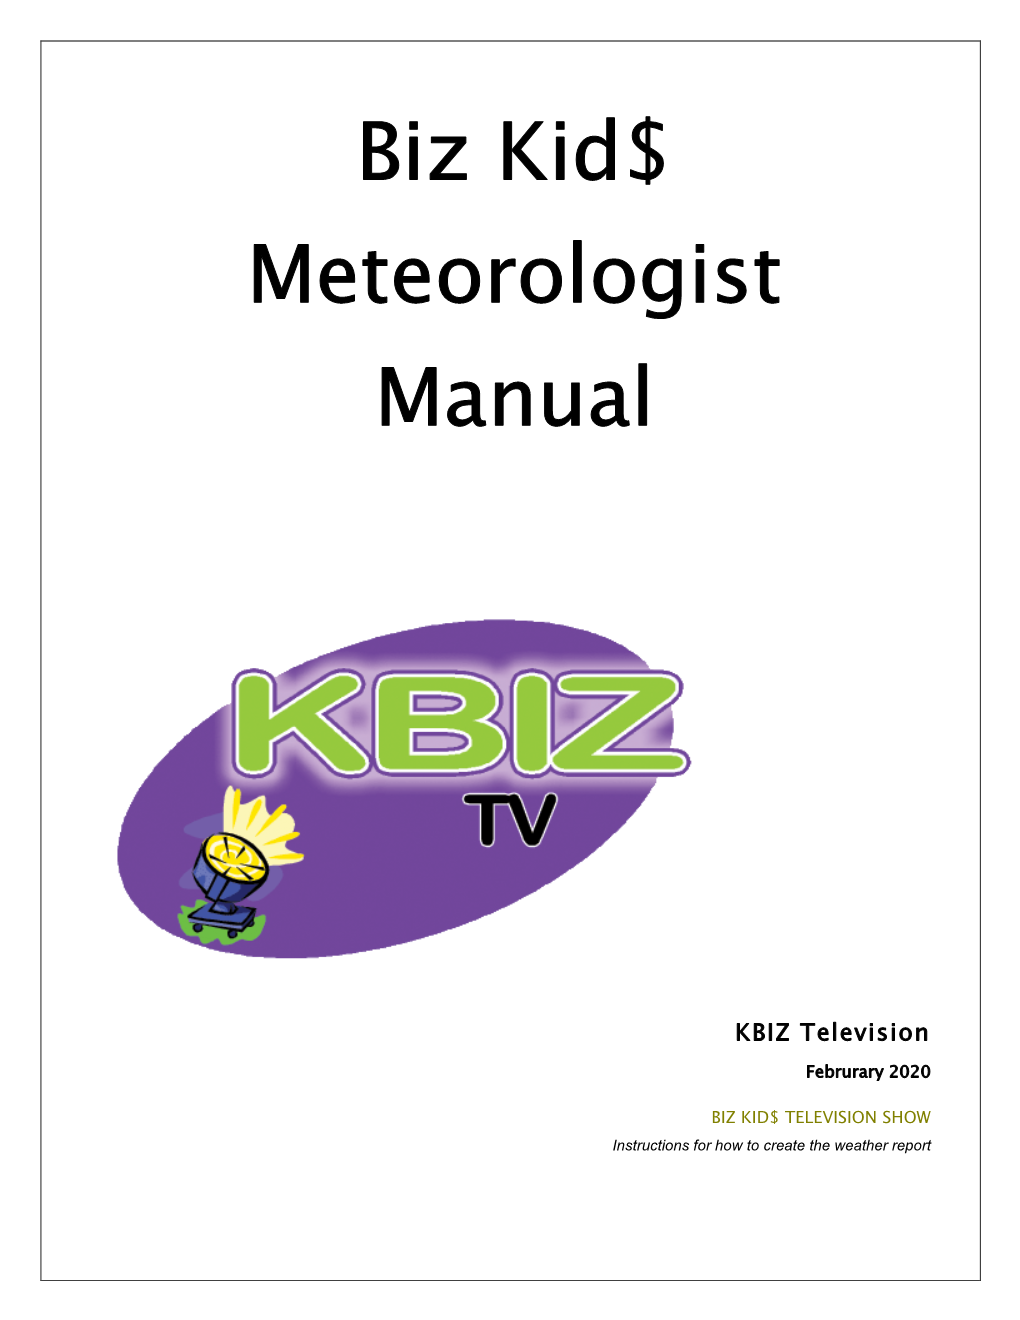 Meteorologist Manual